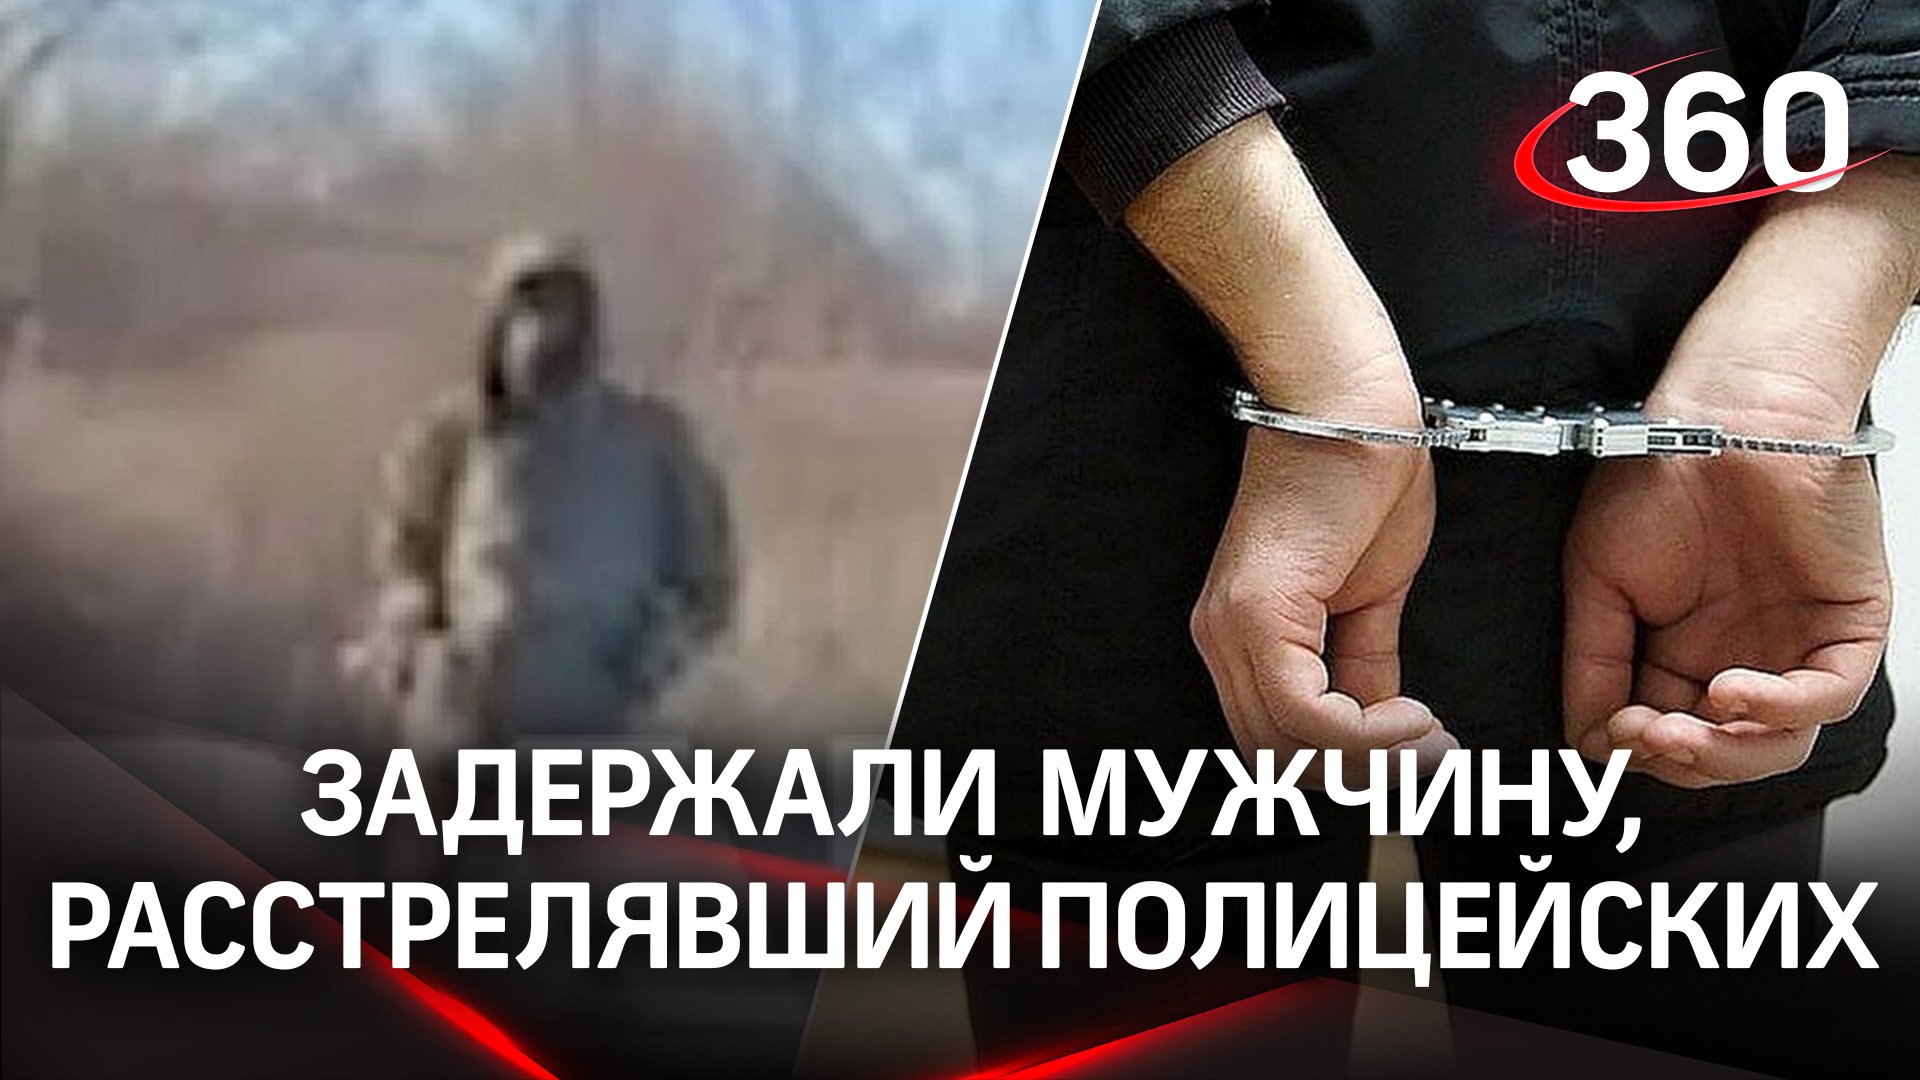 Расстрелявший полицейских из пулемета задержан в Новошахтинске. Он может быть дезертиром